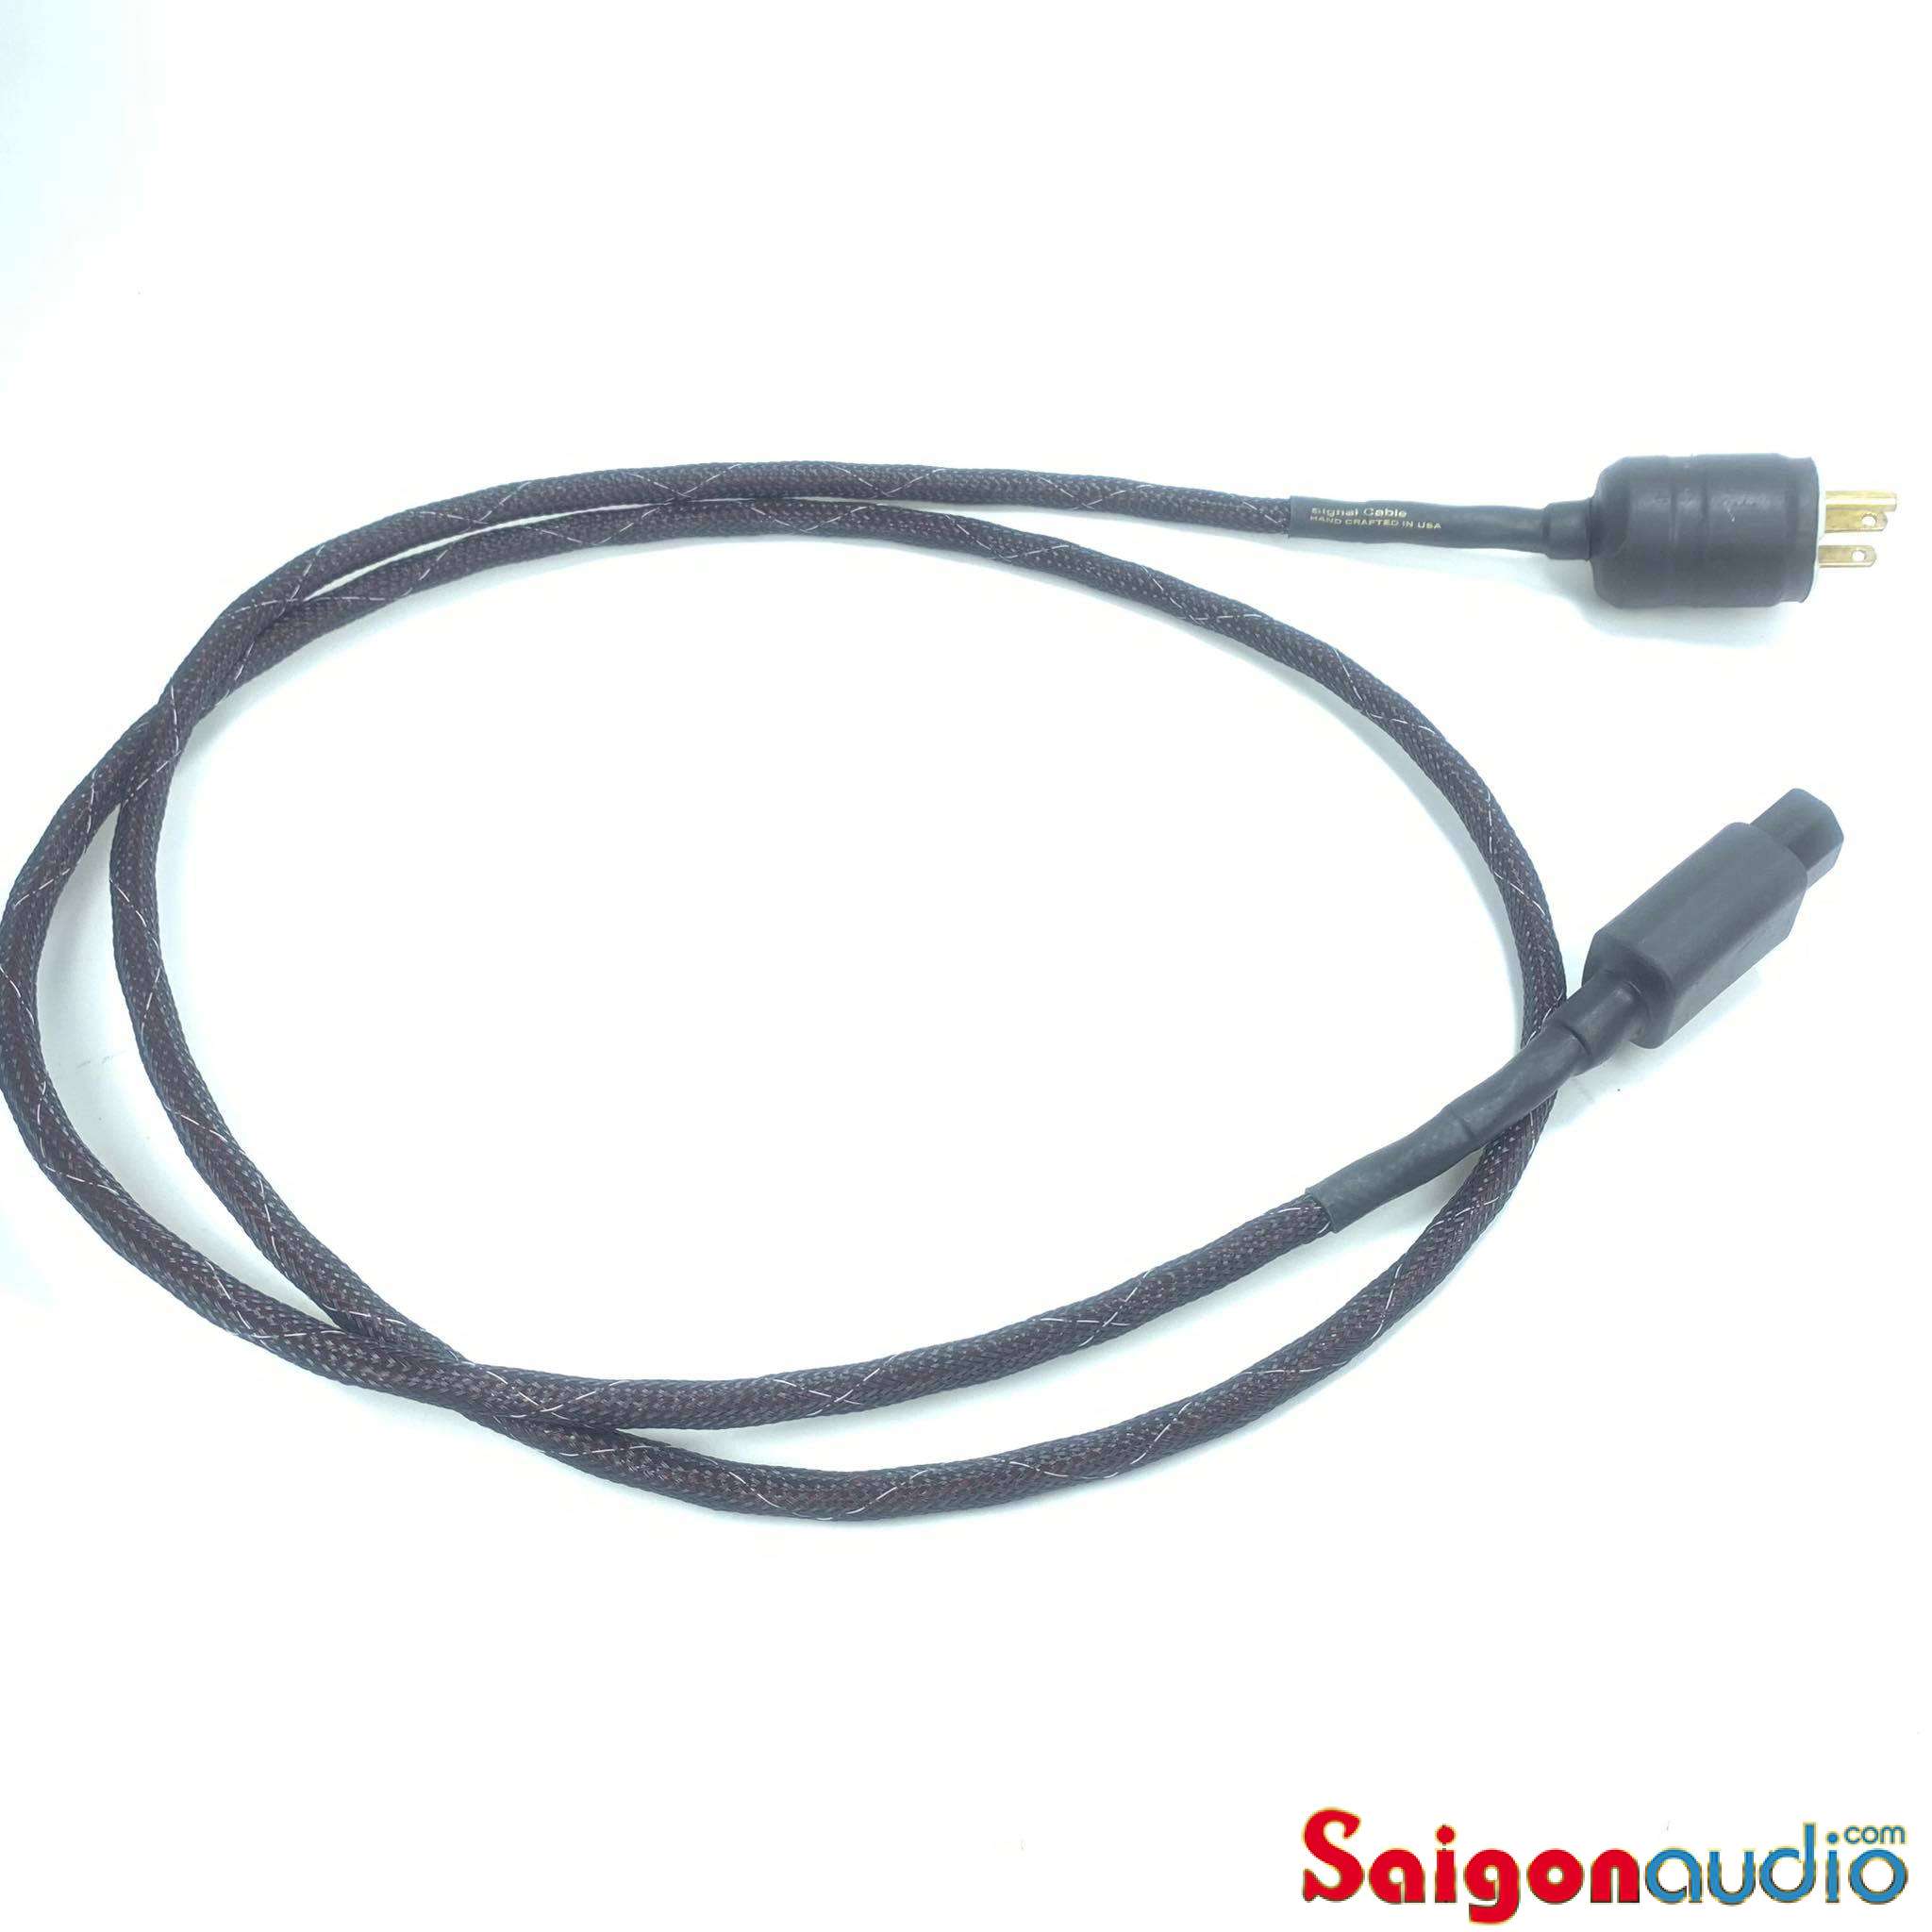 Dây nguồn Signal Cable MagicPower Digital Reference, chuyên dùng cho CD, DAC, Transports, Preamp | 1m8